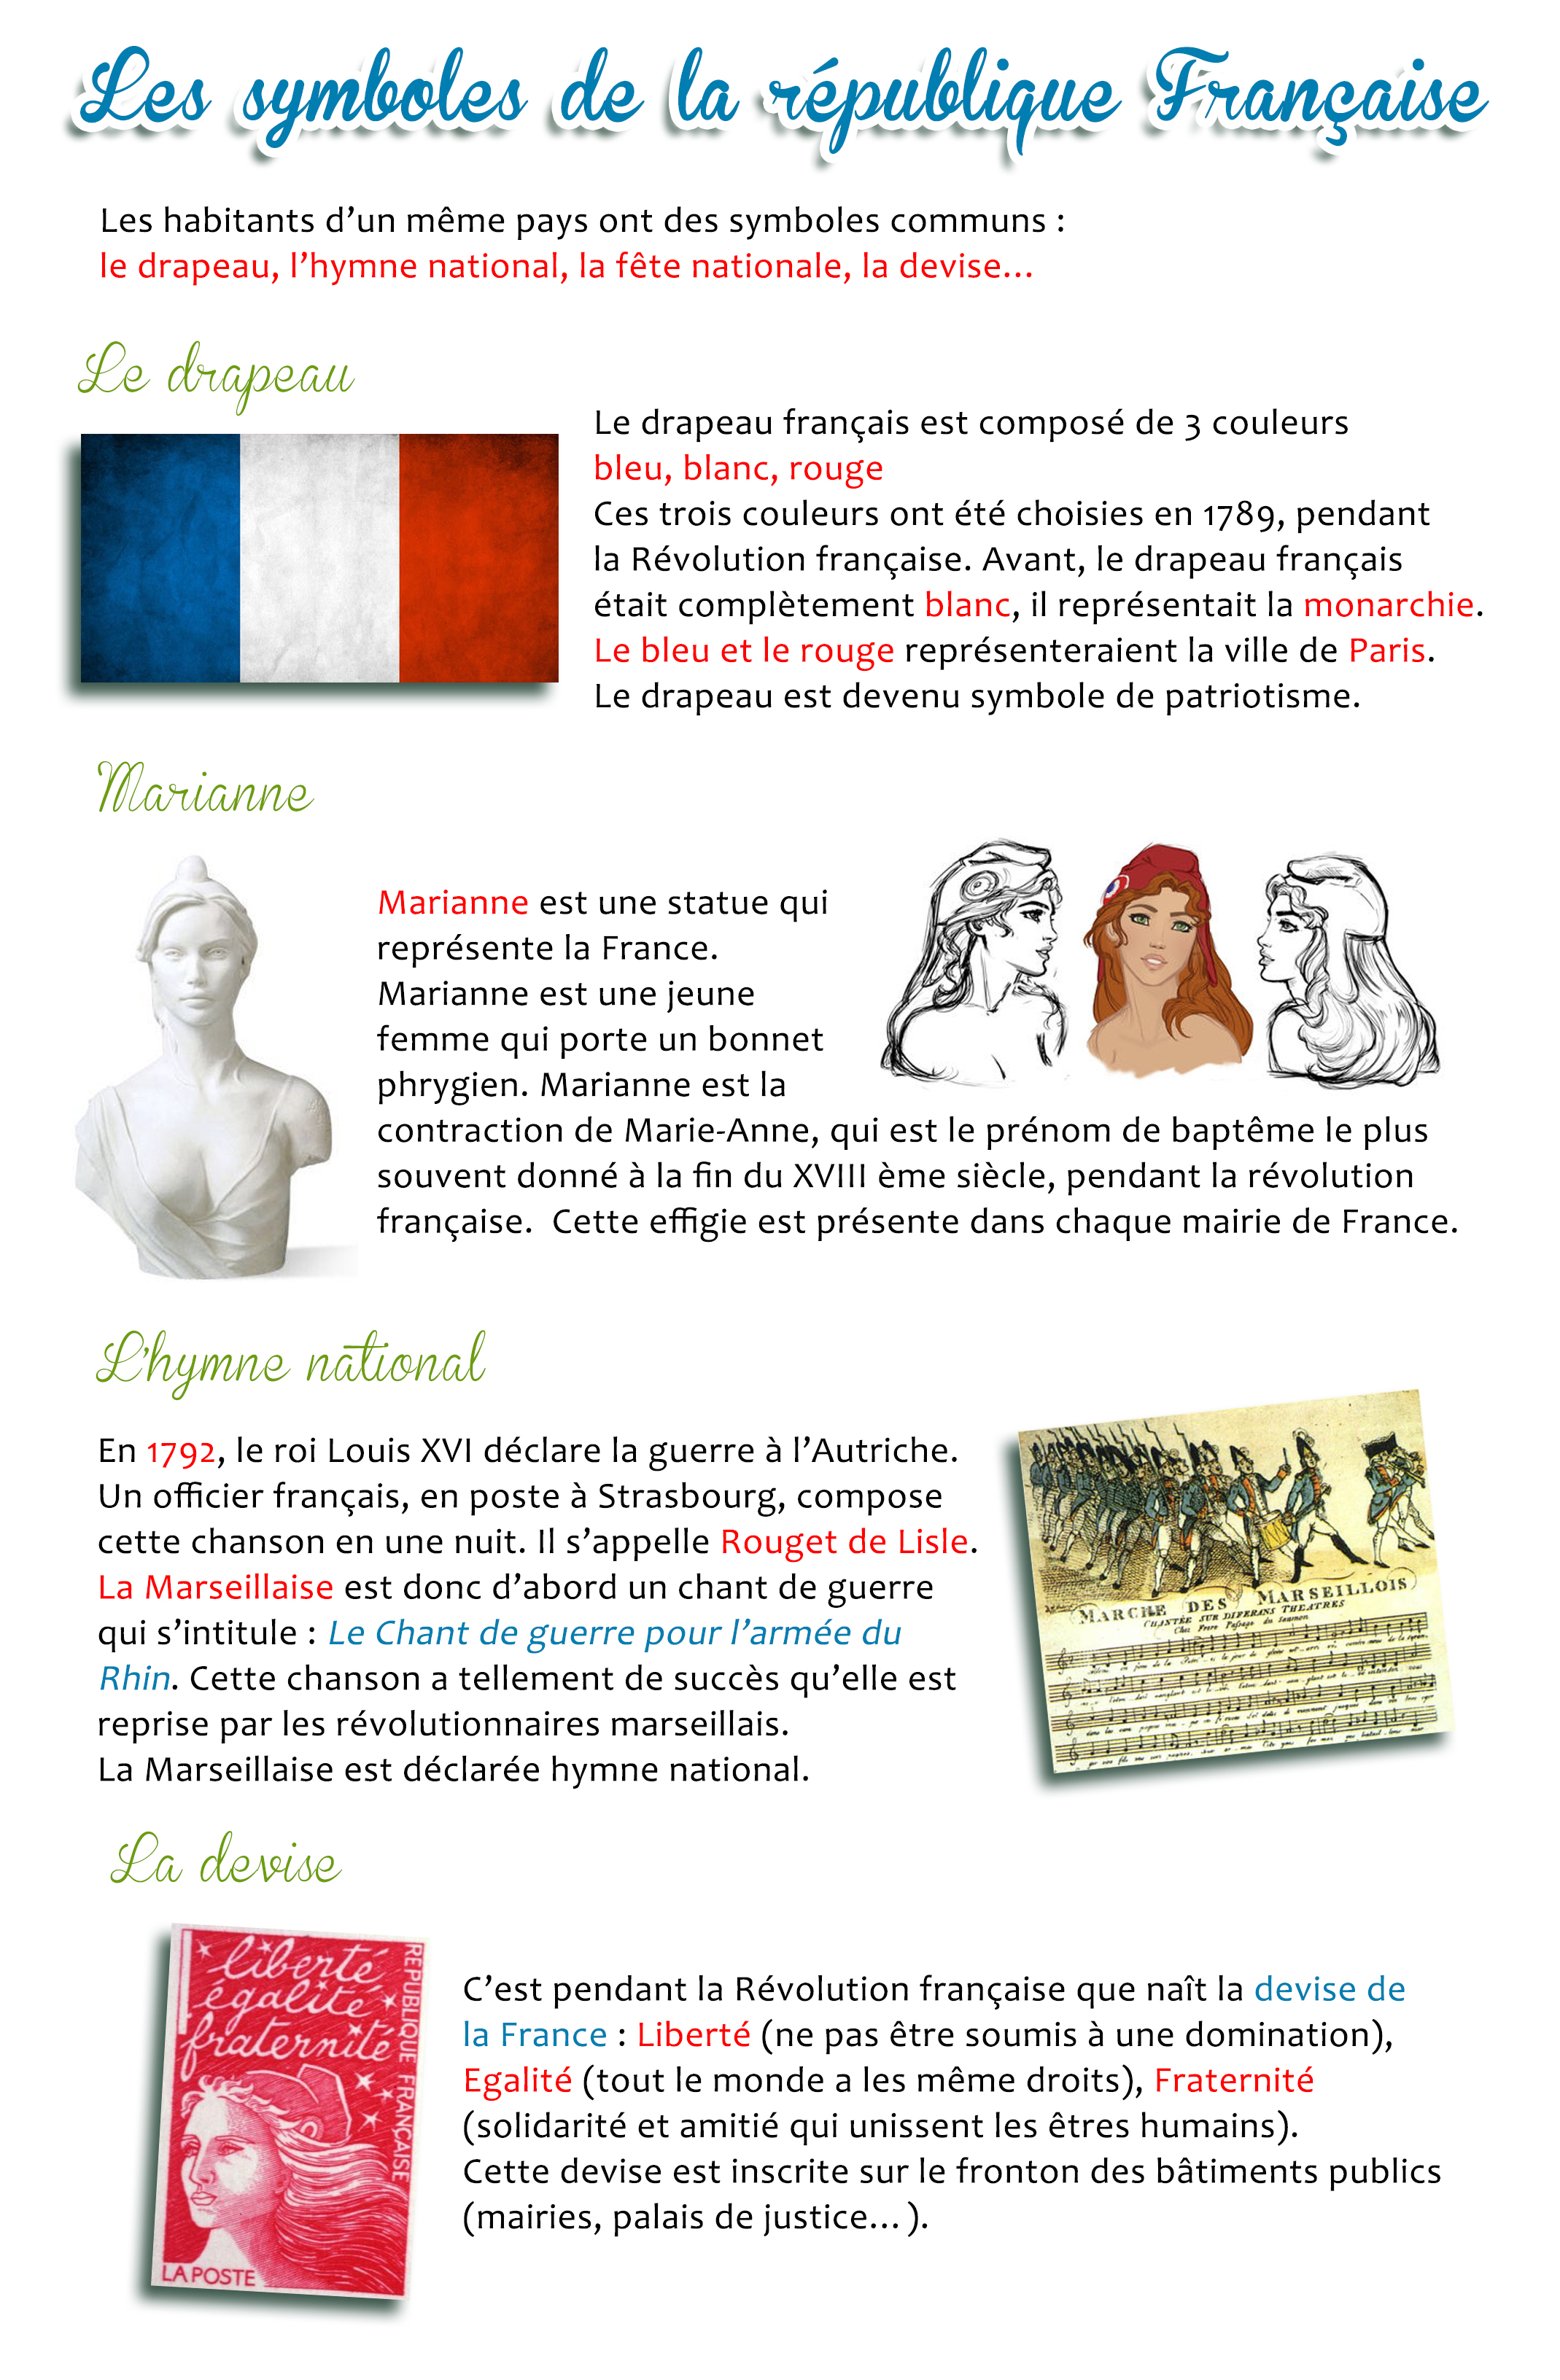 Co wiesz o Francji? - informacje o symbolach Francji 5 - Francuski przy kawie